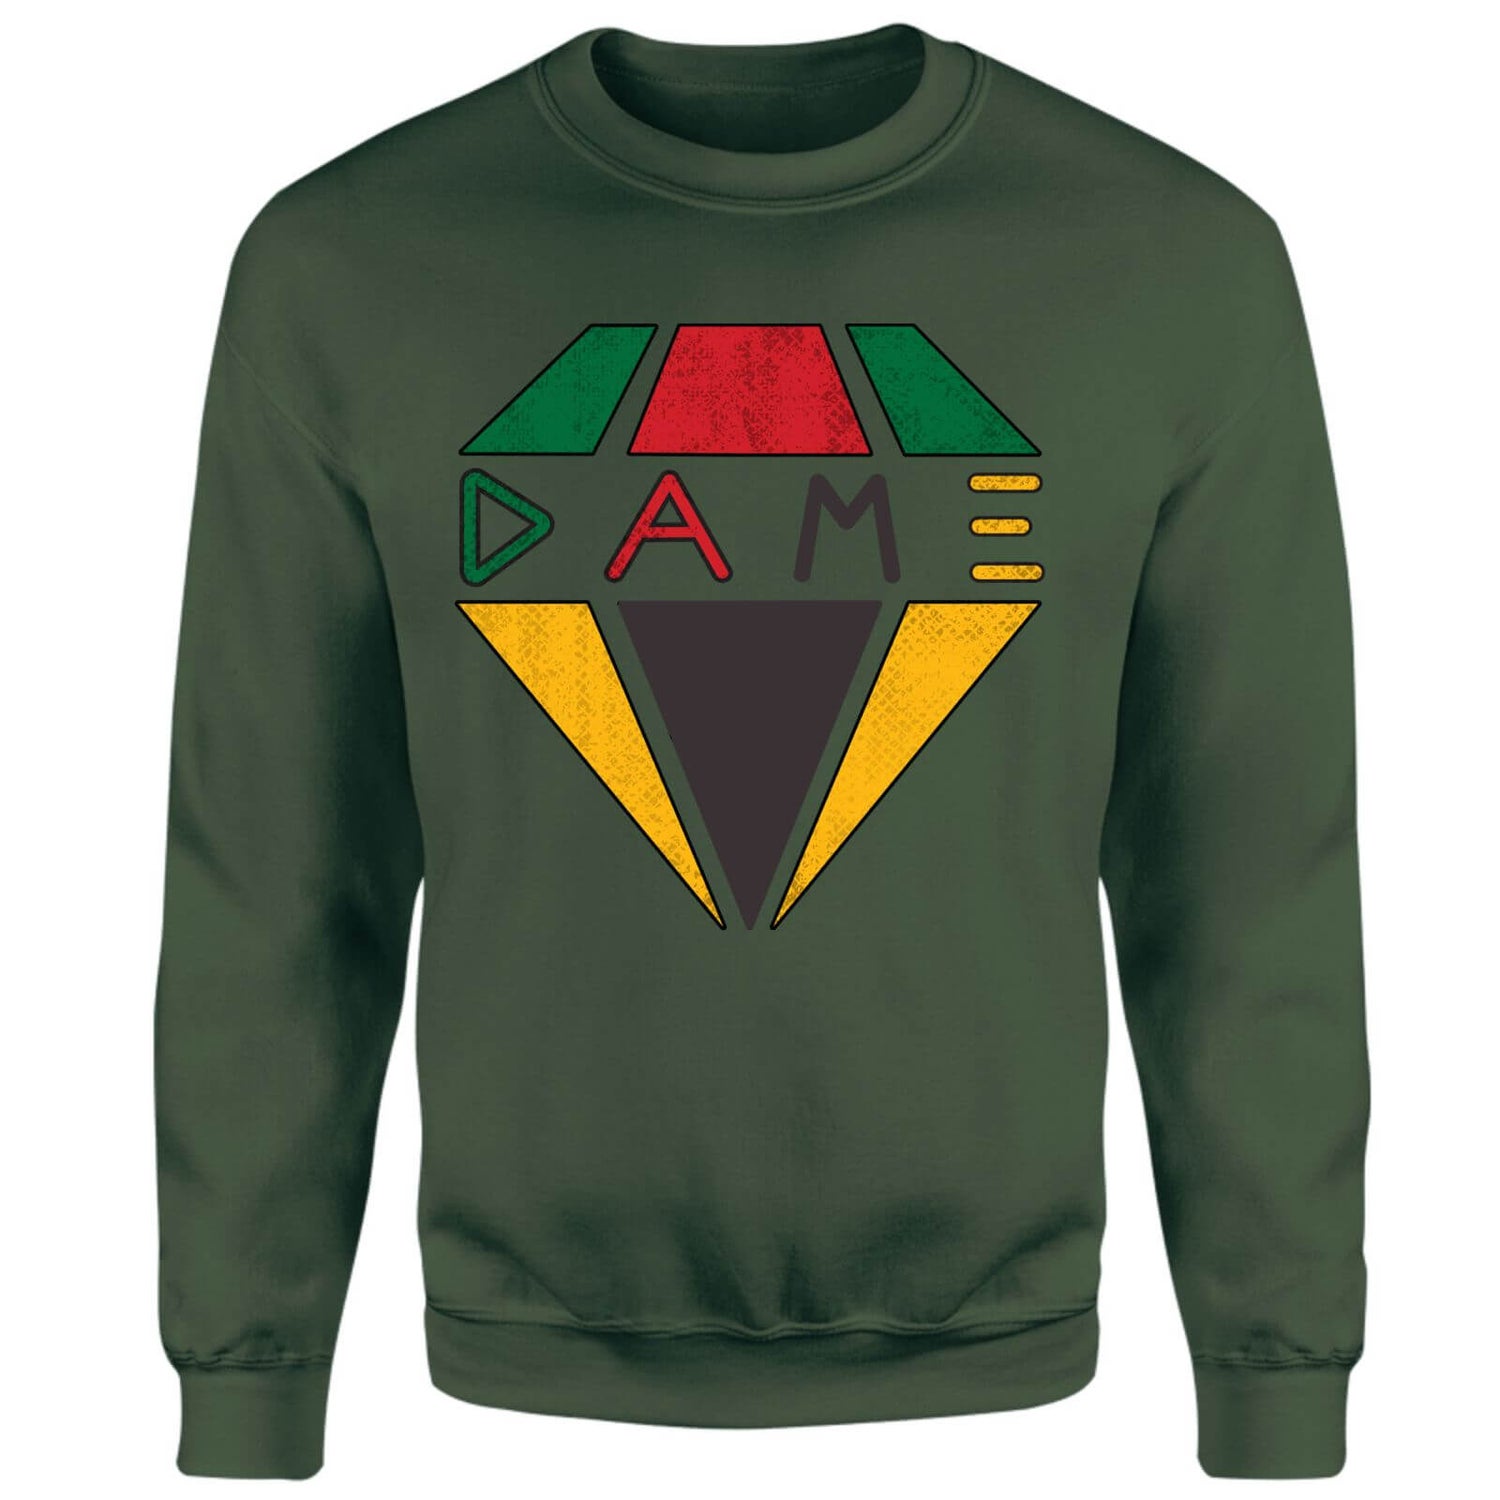 Creed DAME Diamond Logo Sweatshirt - Green - XS